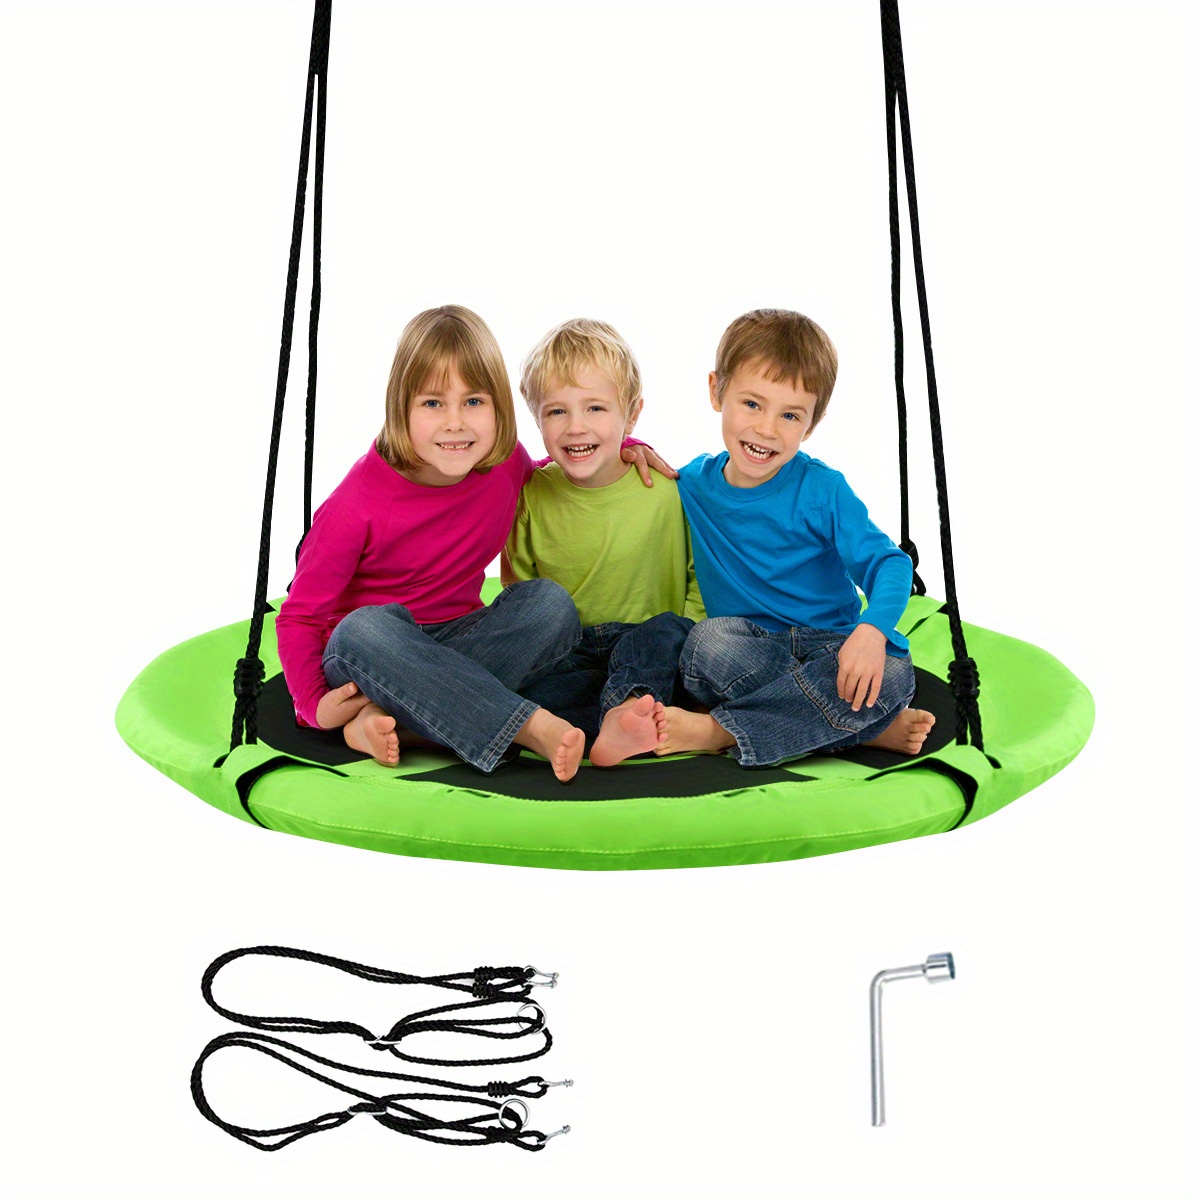 

Multigot 40" Flying Saucer Tree Swing Indoor Outdoor Play Set Kids Christmas Gift Green